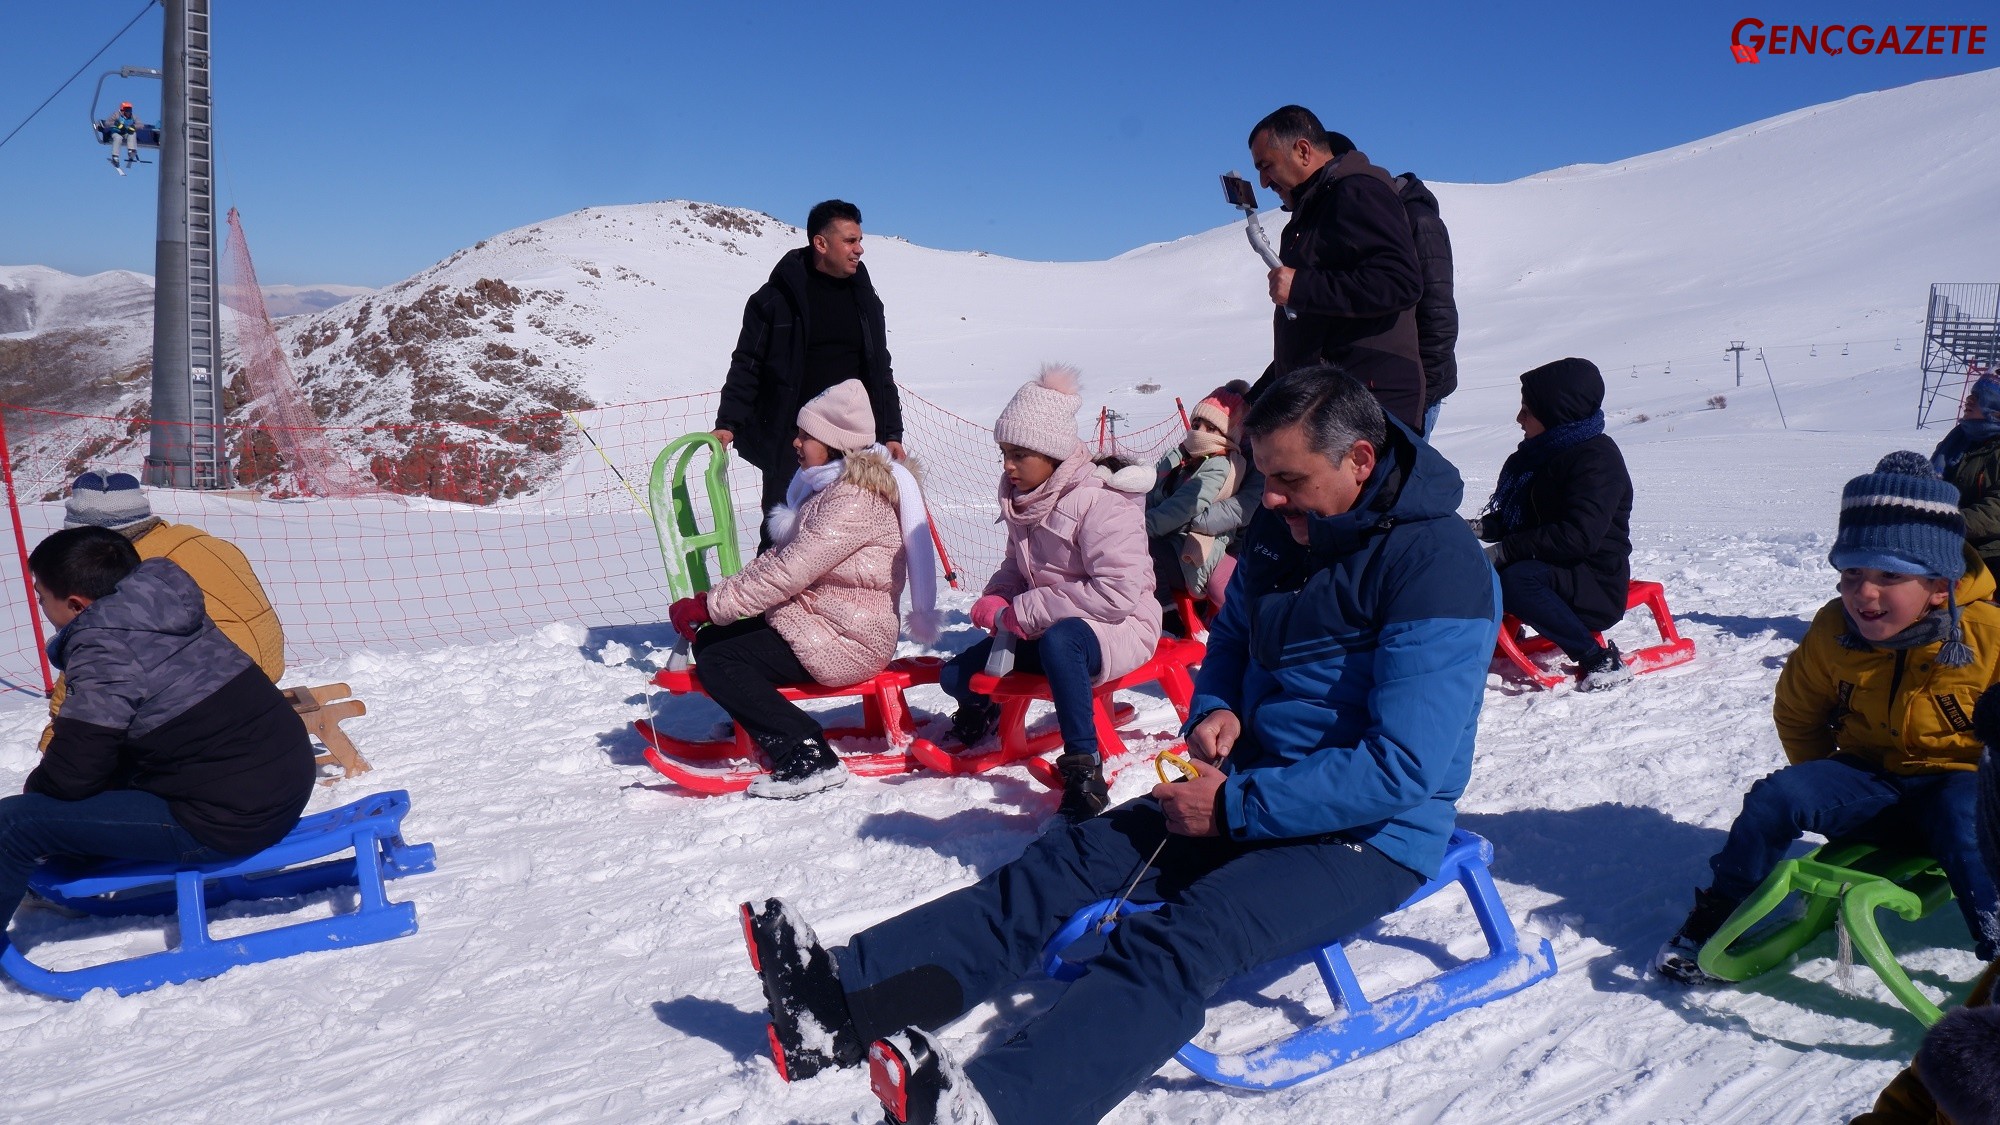 Genç Gazete Erzurum'da Vali Çocuklarla  Kızak Kayıp Kayak Yaptı  (8)